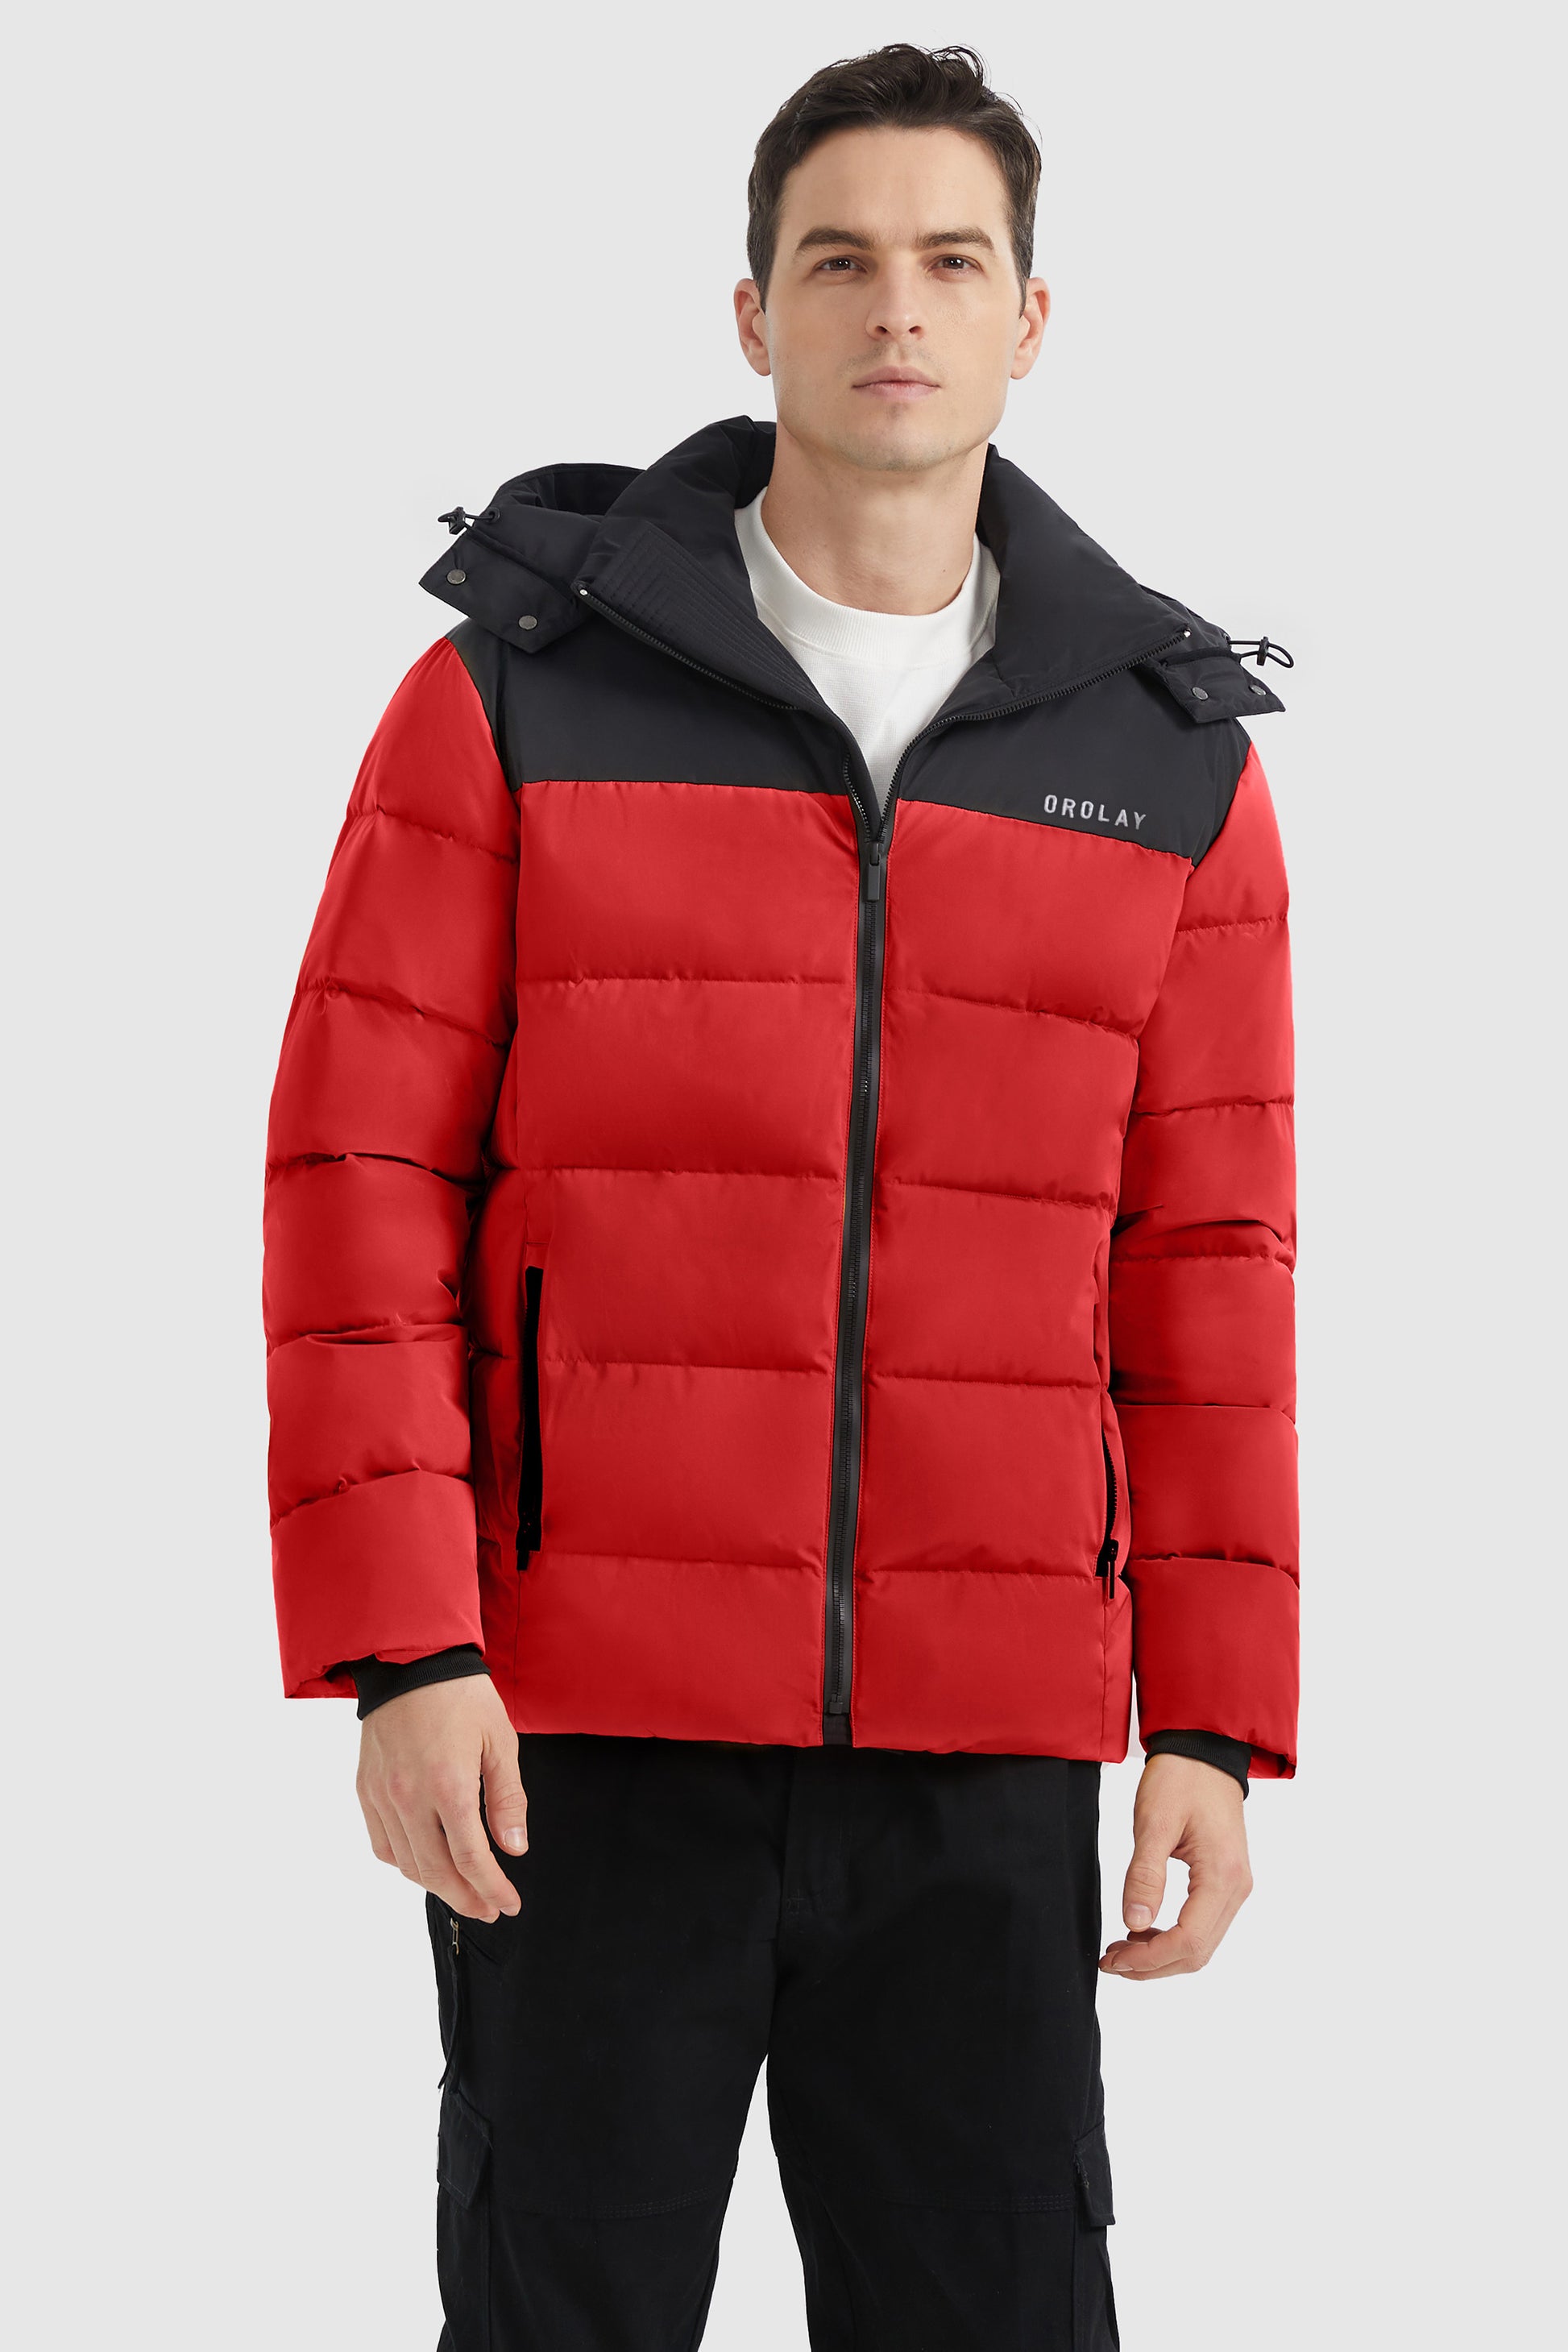 Orolay Men's Puffer Warm Jacket Winter Full-Zip Windproof Coat